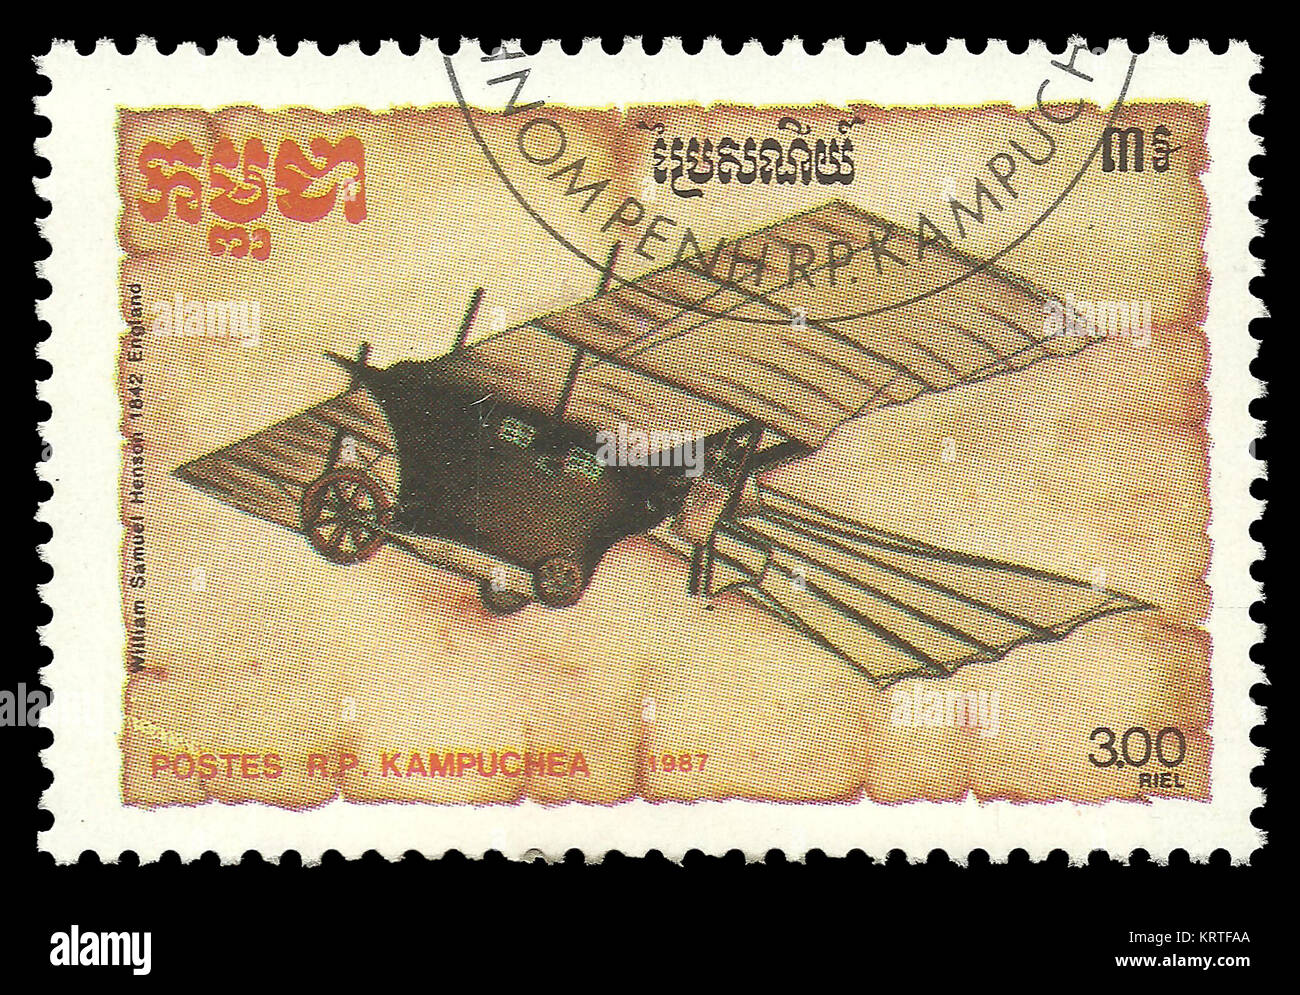 Kambodscha - Stempel 1987, Color Edition auf Thema Luftfahrt, zeigt Flugzeug Modell 'Antenne Dampf Beförderung' William Henson, 1842 Stockfoto